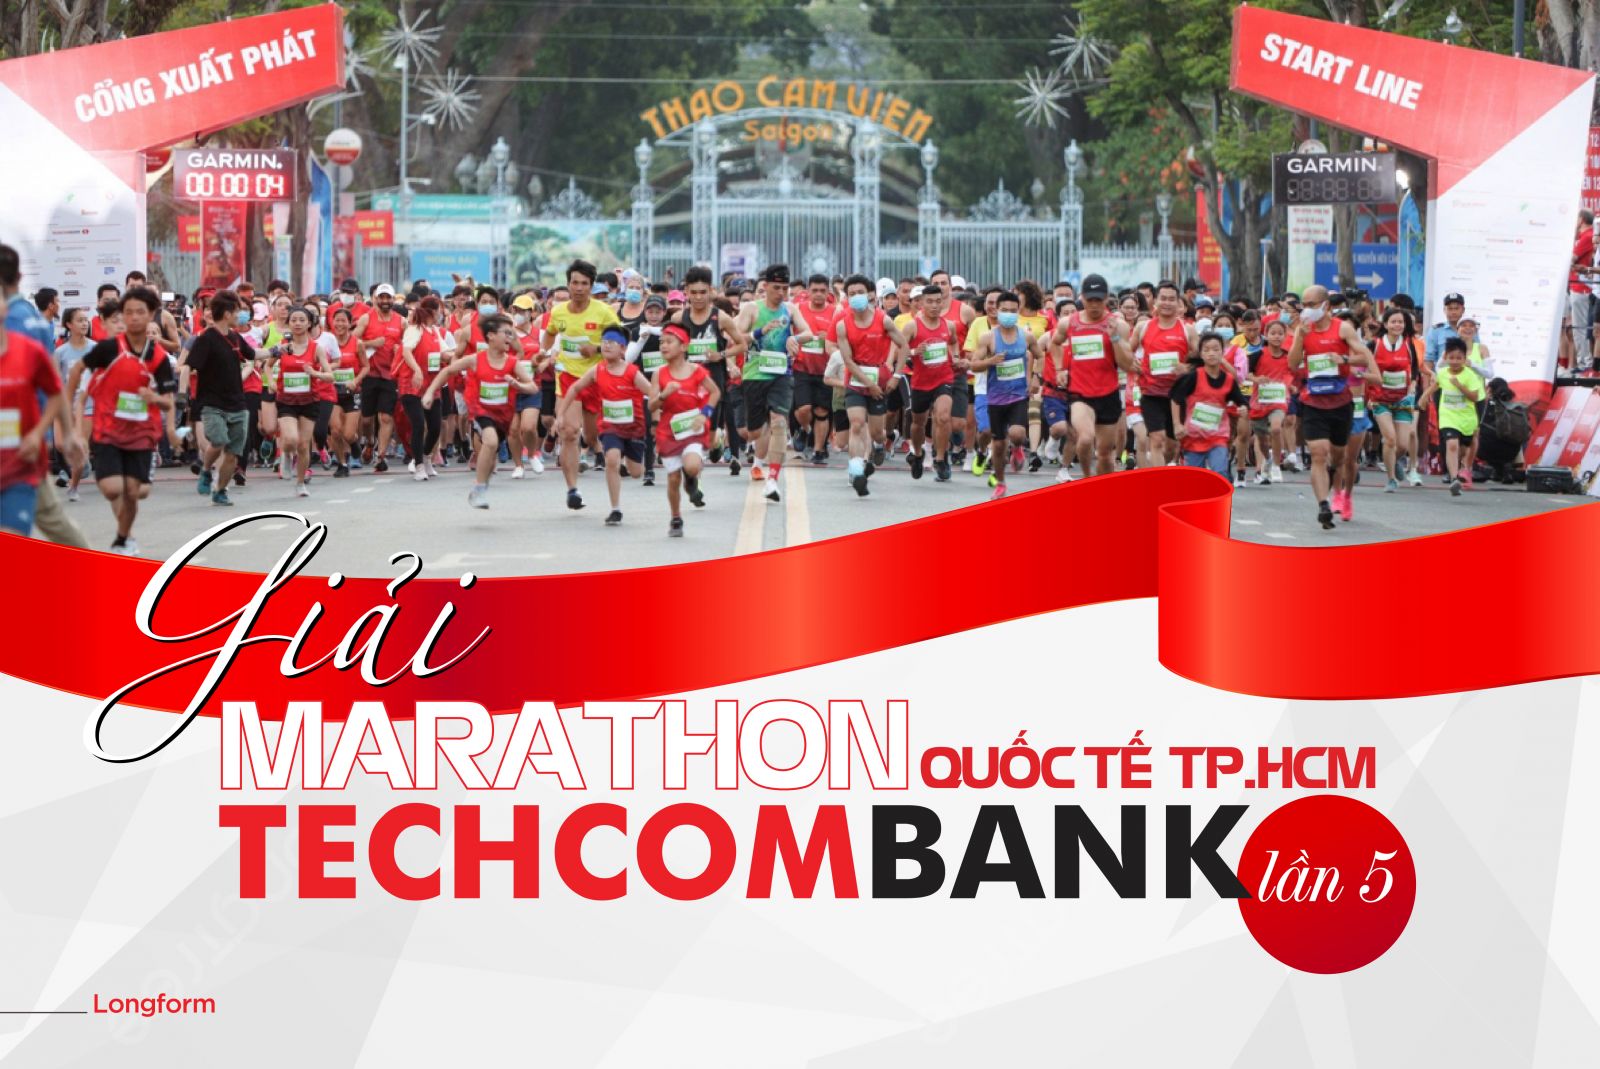 Những điều thú vị ở giải Marathon quốc tế TP. Hồ Chí Minh Techcombank lần thứ 5